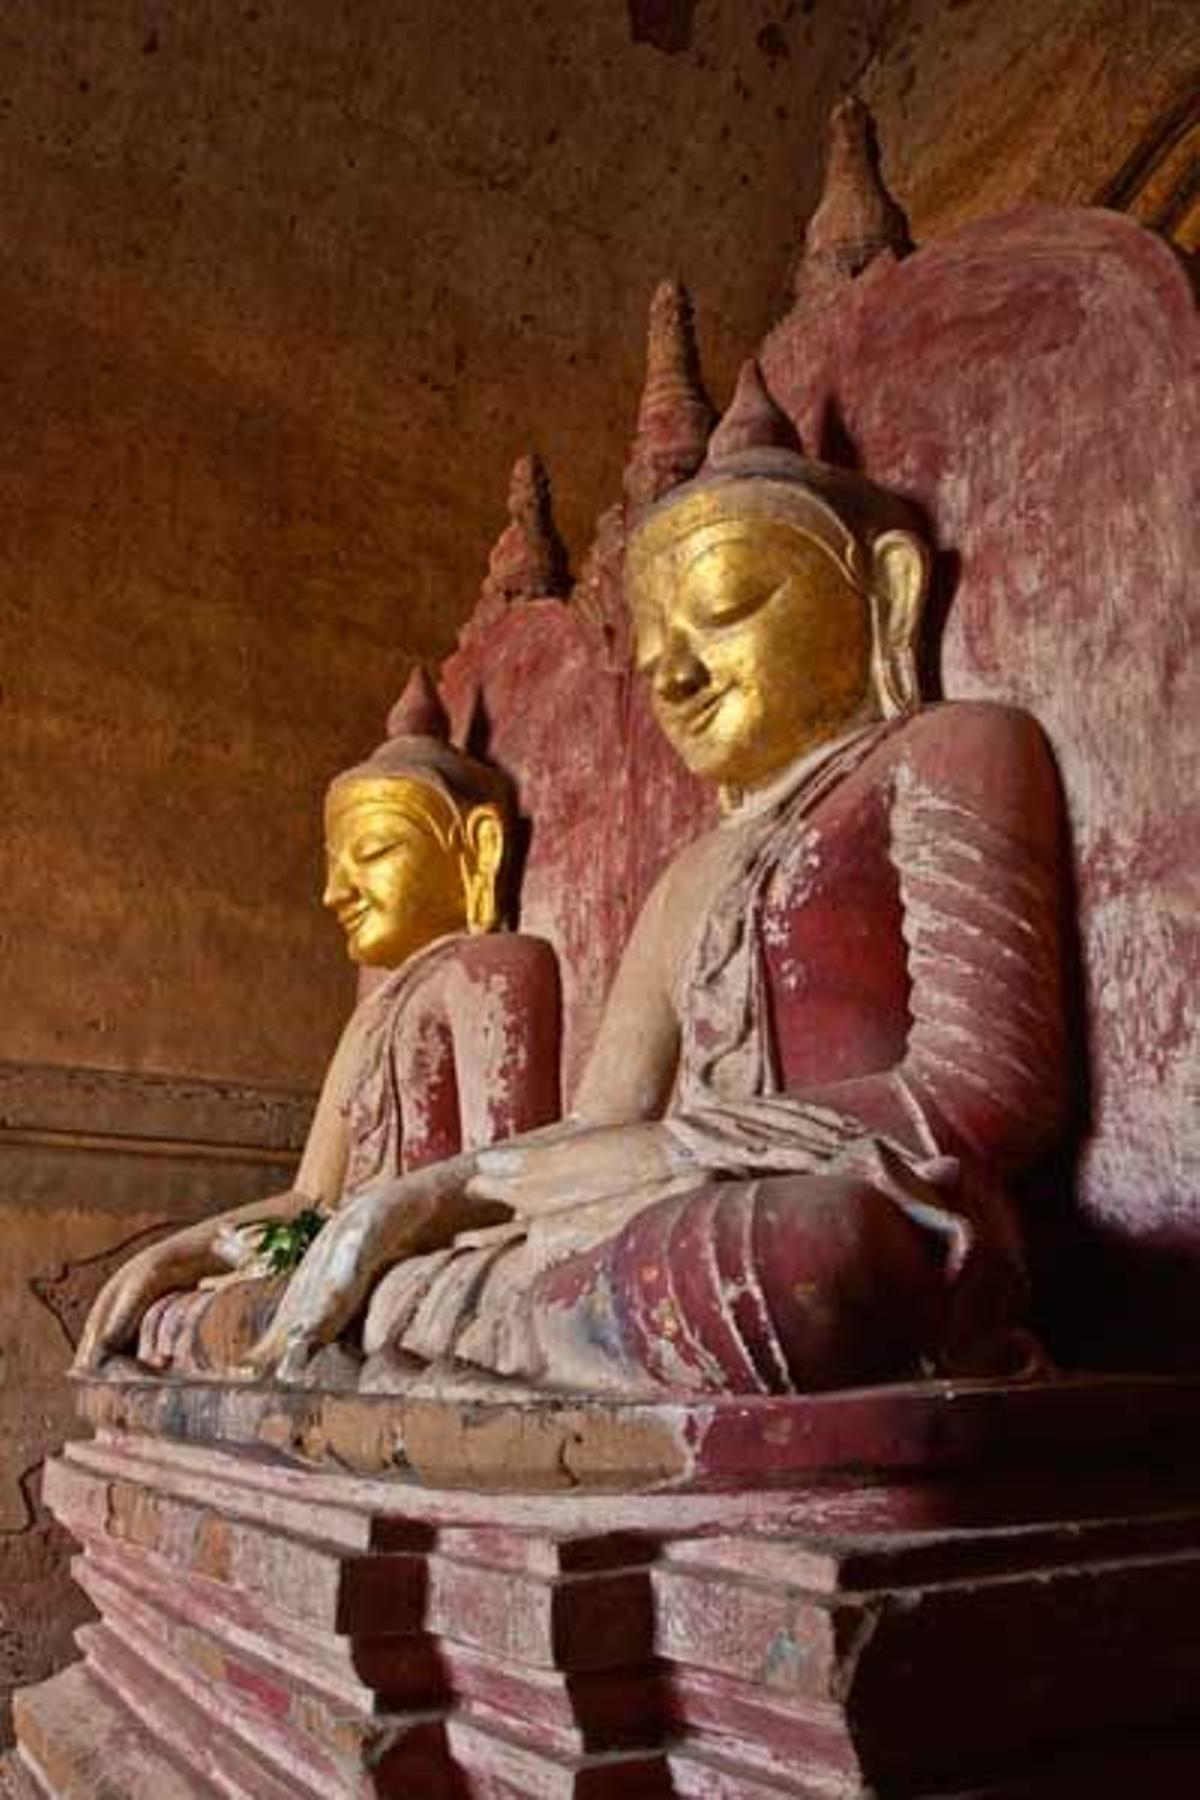 En el interior del Templo Dhammayangyi se encuentran estos Budas del siglo XII.